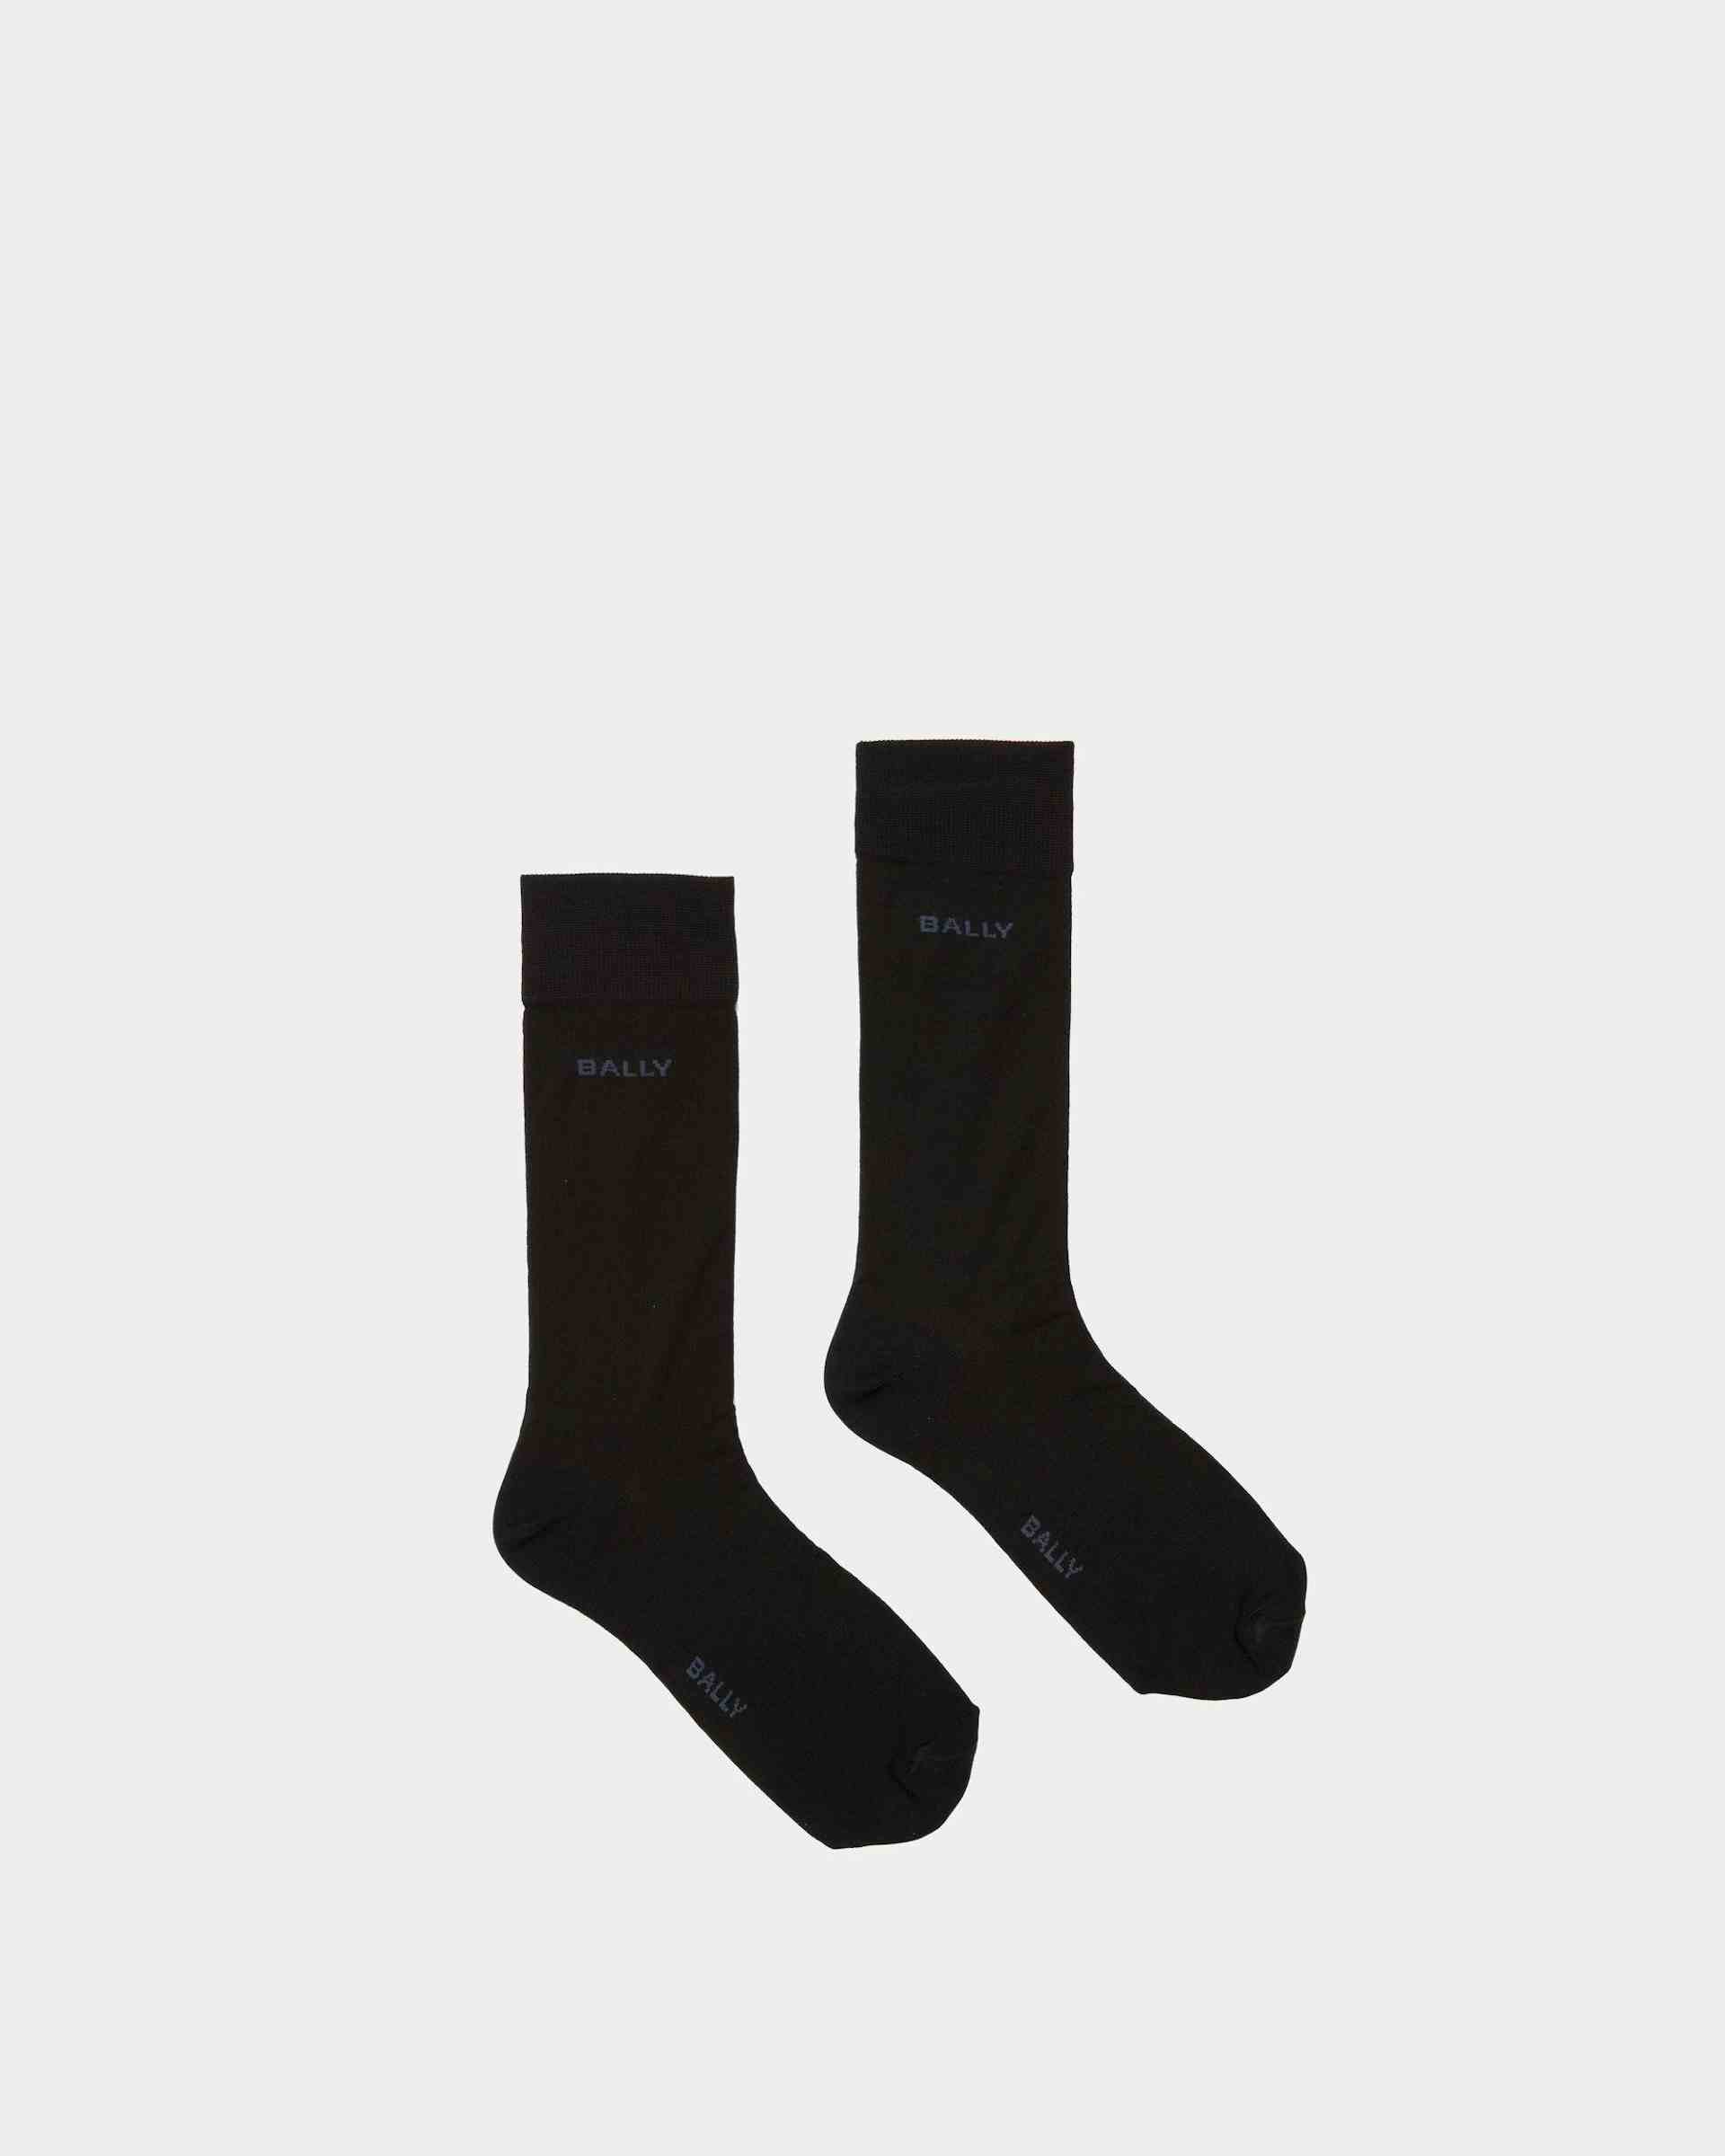 Logo-Socken Aus Baumwollgemisch in Tintenblau und Indigoblau - Herren - Bally